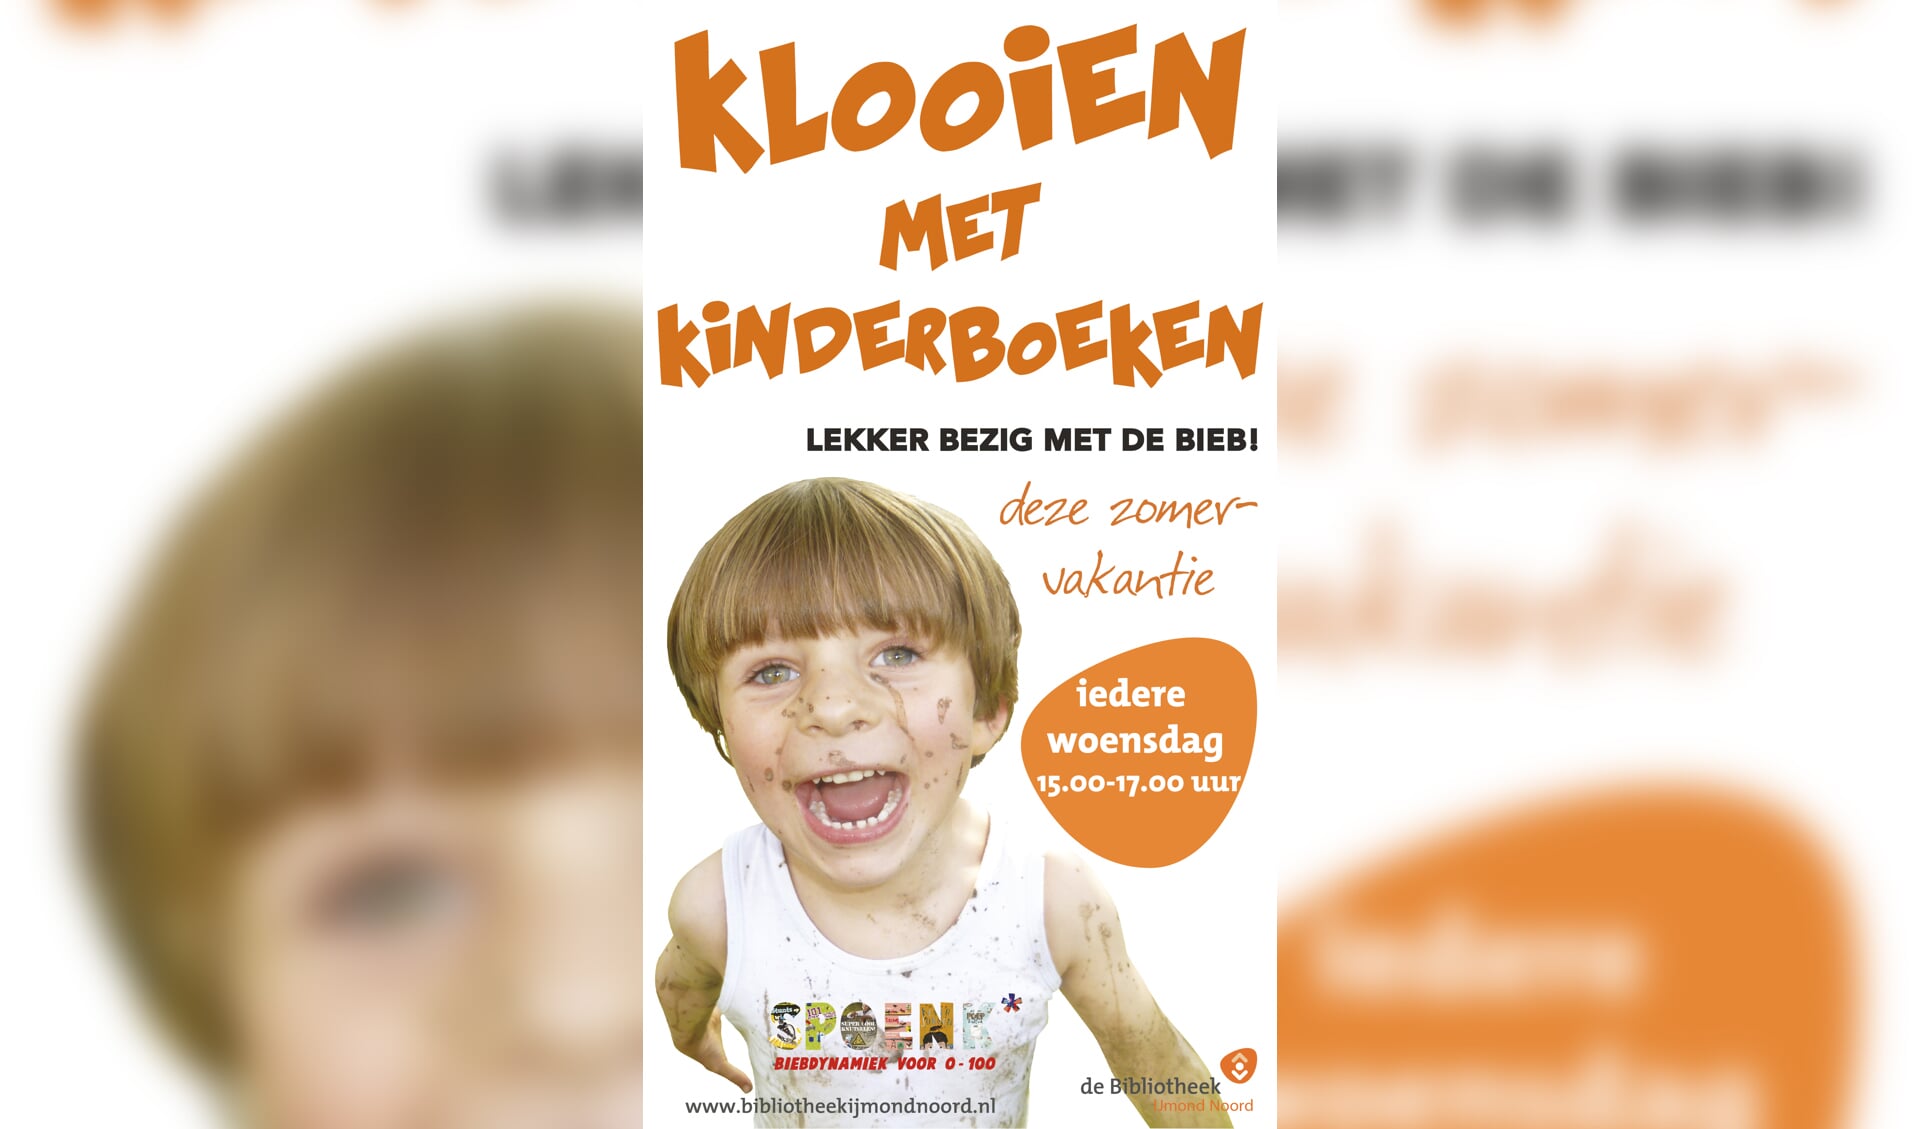 De poster van 'klooien met kinderboeken'. (foto aangeleverd)